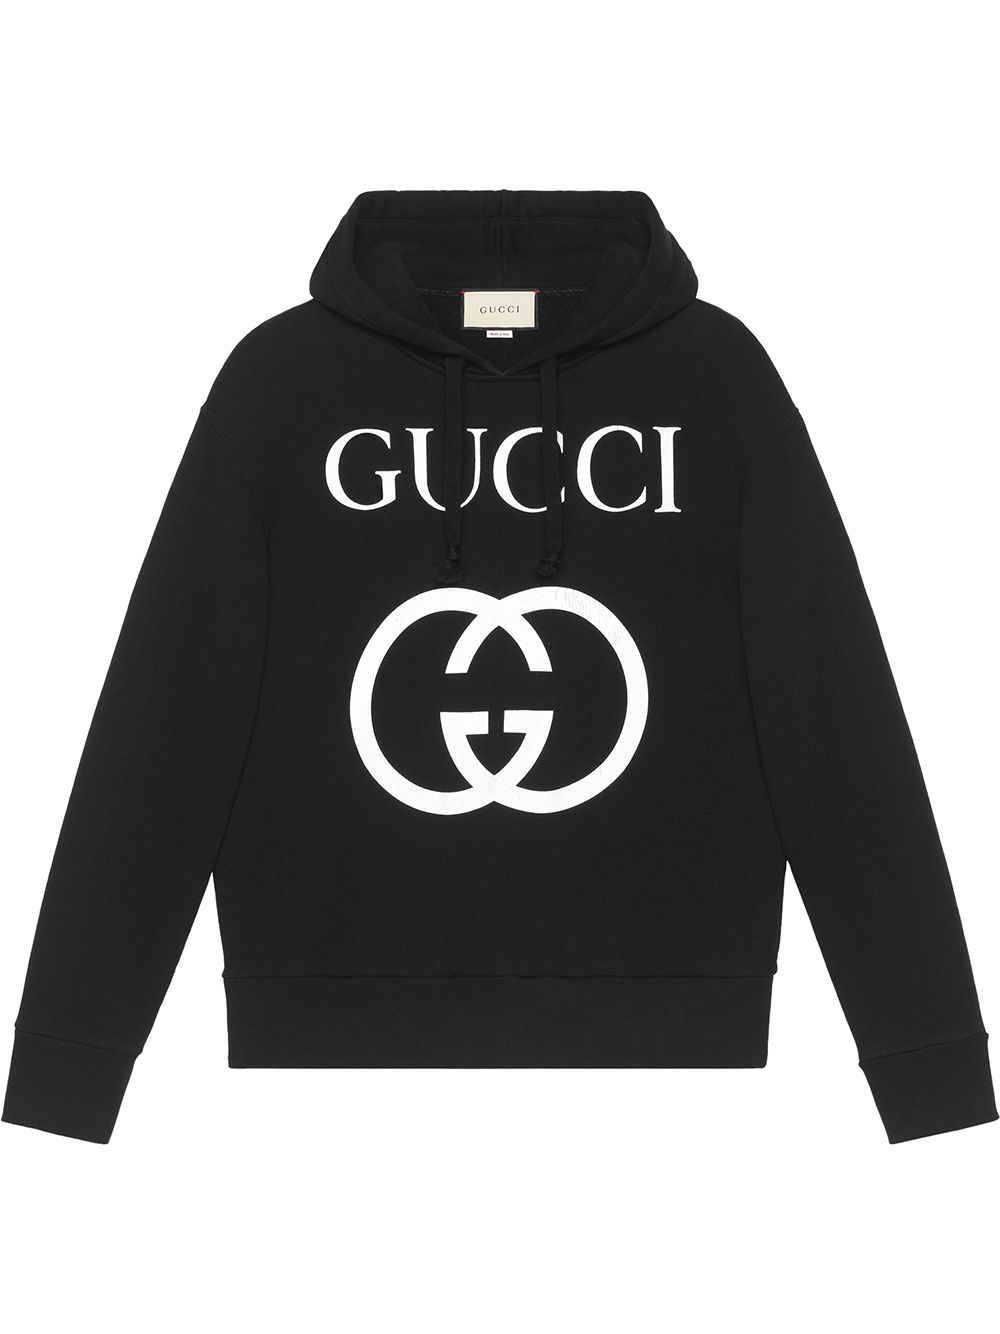 фото Gucci толстовка с капюшоном и логотипом